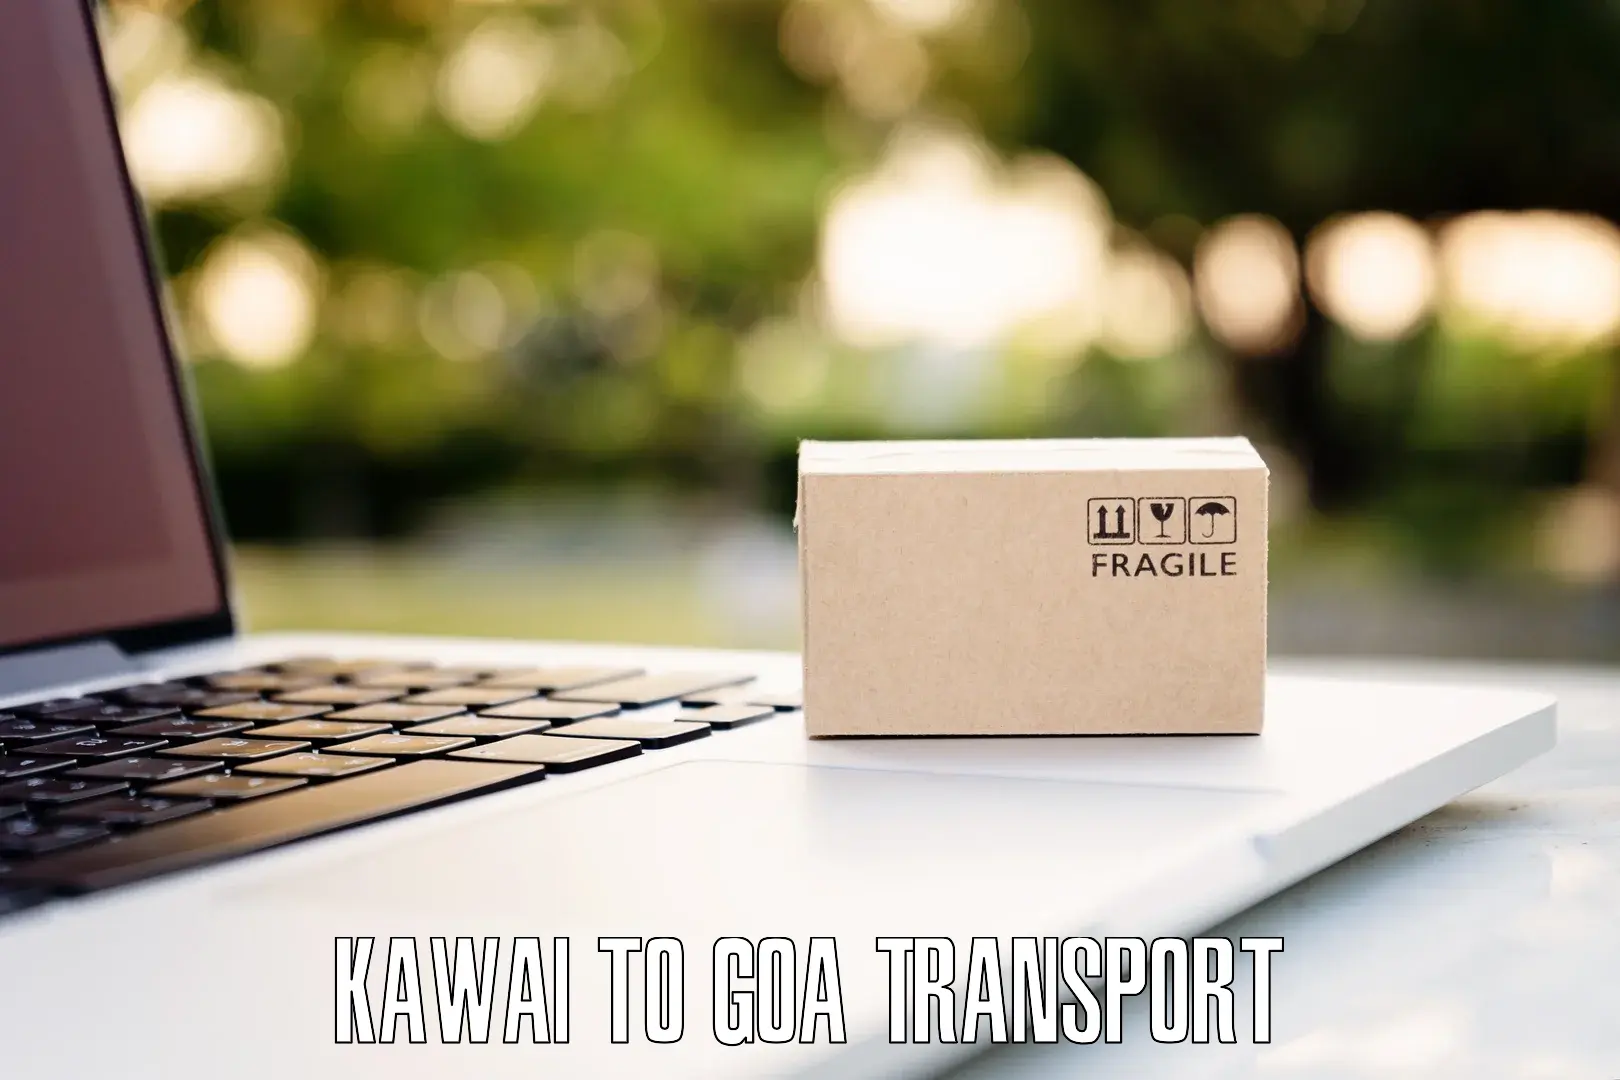 Transport in sharing Kawai to Bicholim